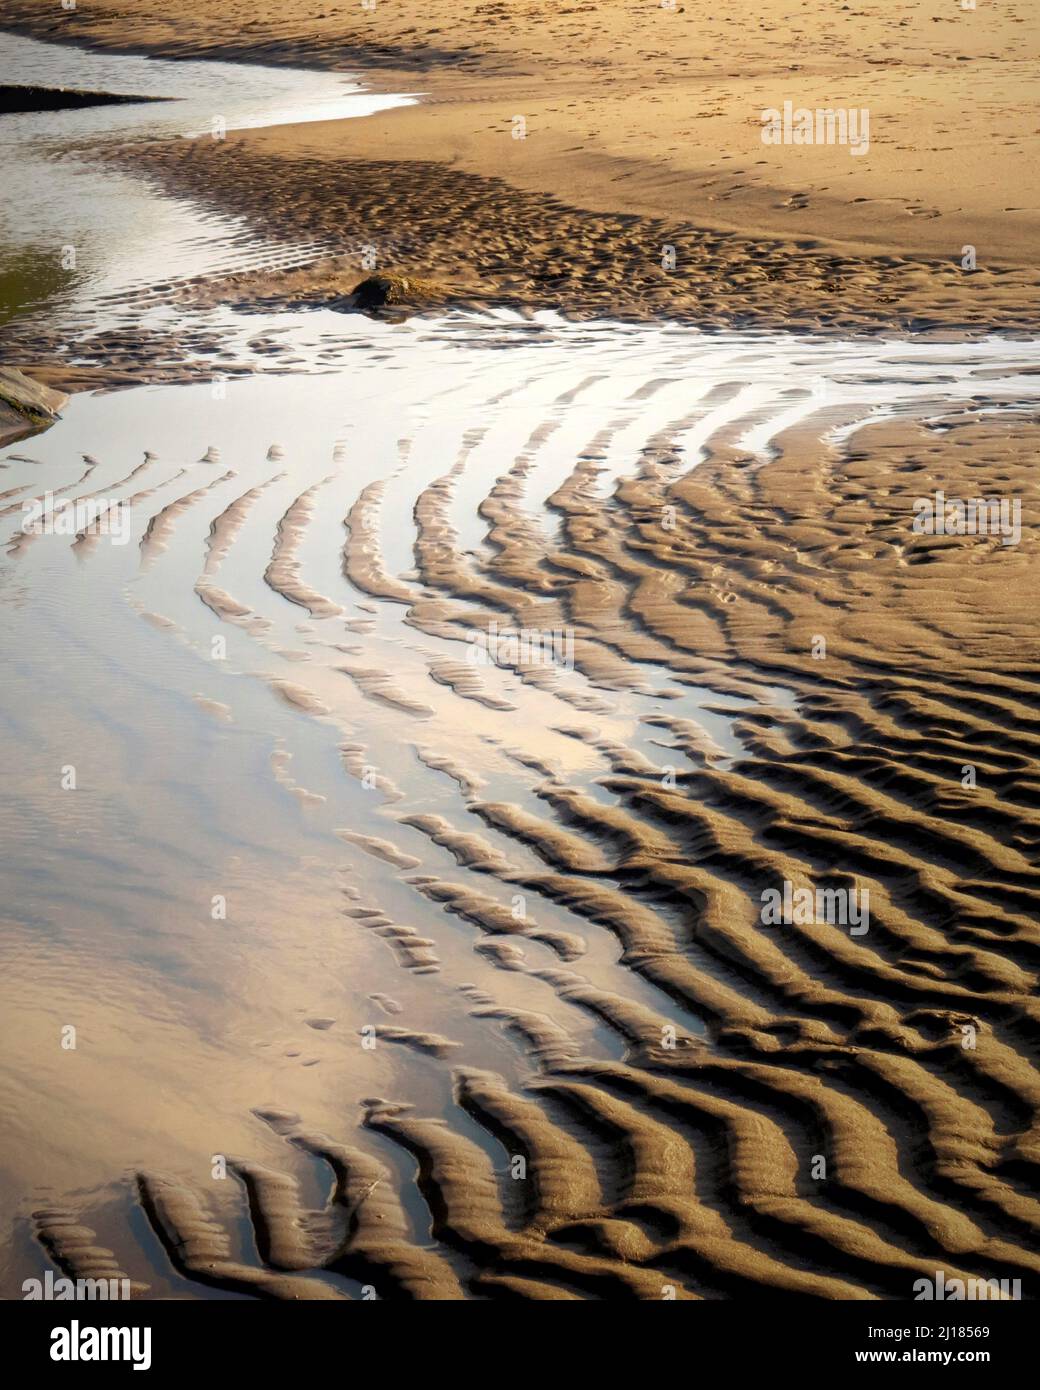 Farbfoto mit Gezeitensandmustern und Reflexionen mit unterschiedlichen Texturen und Farben auf dem feuchteren Sand der Penb, die dem National Trust gehört Stockfoto